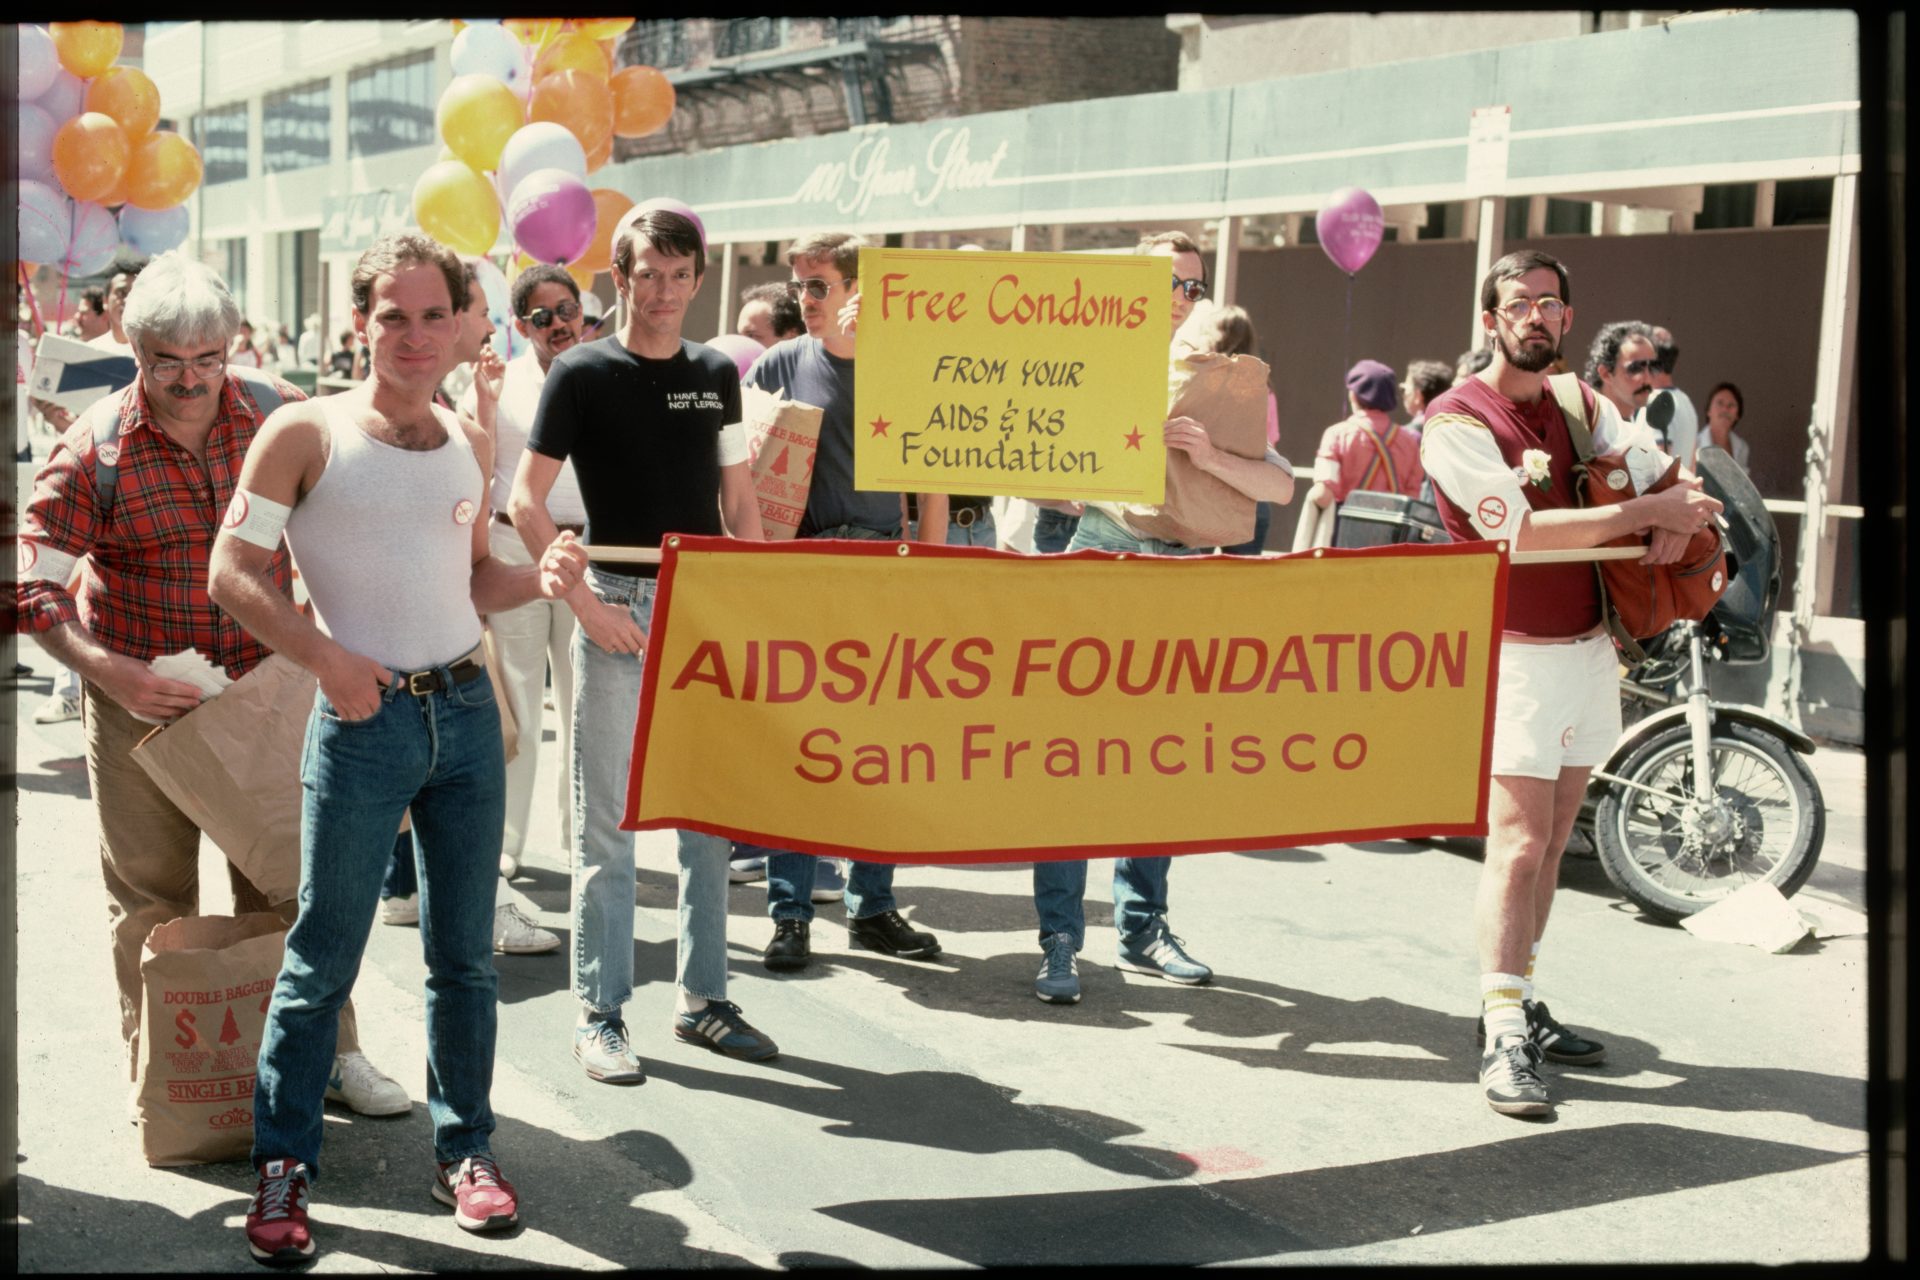 De meest dodelijke pandemie is hiv/aids